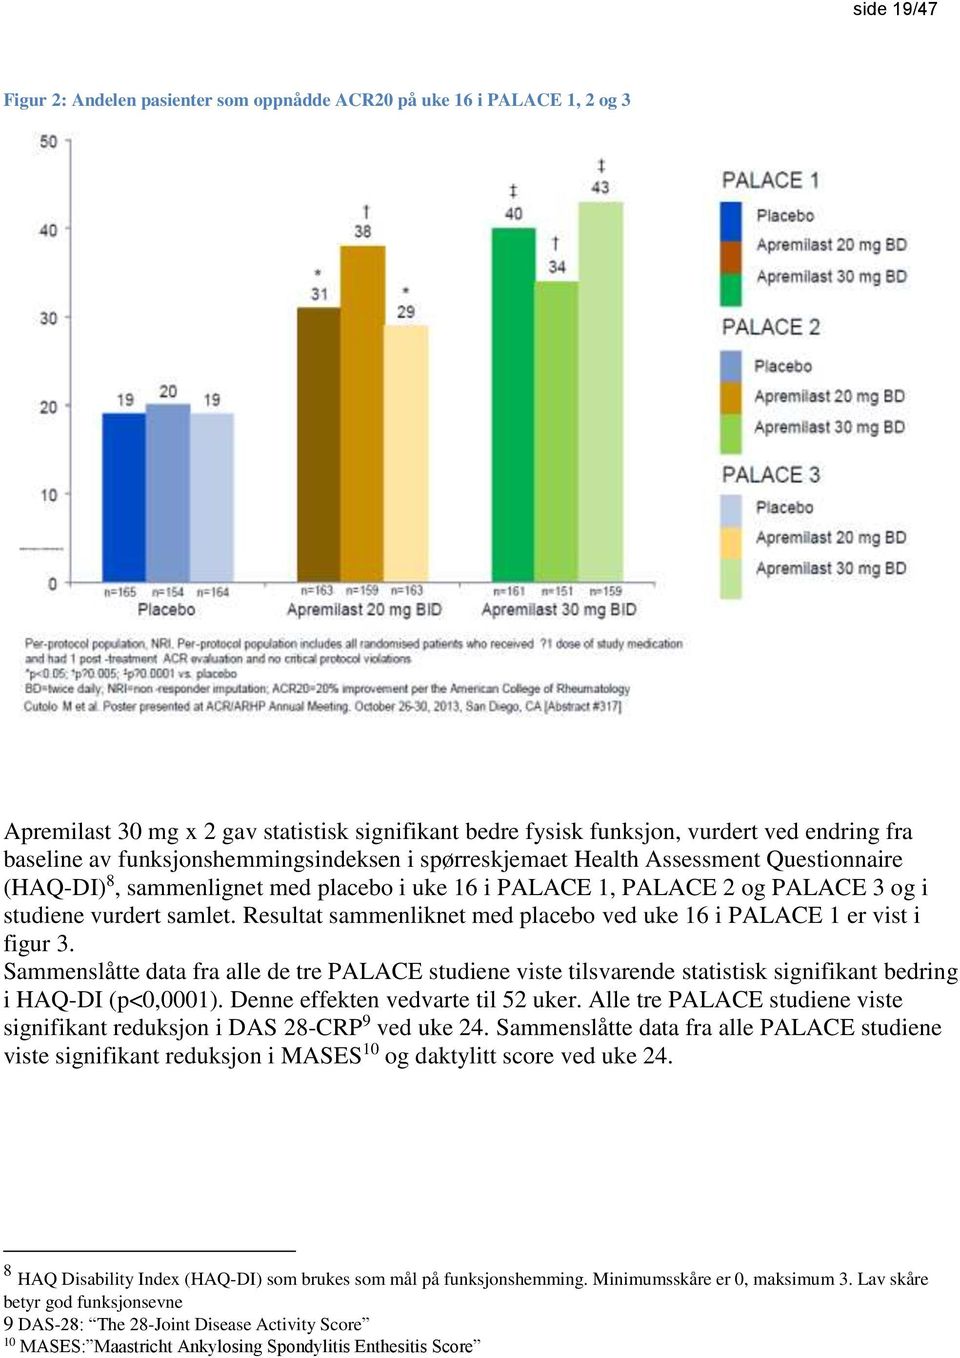 Resultat sammenliknet med placebo ved uke 16 i PALACE 1 er vist i figur 3. Sammenslåtte data fra alle de tre PALACE studiene viste tilsvarende statistisk signifikant bedring i HAQ-DI (p<0,0001).